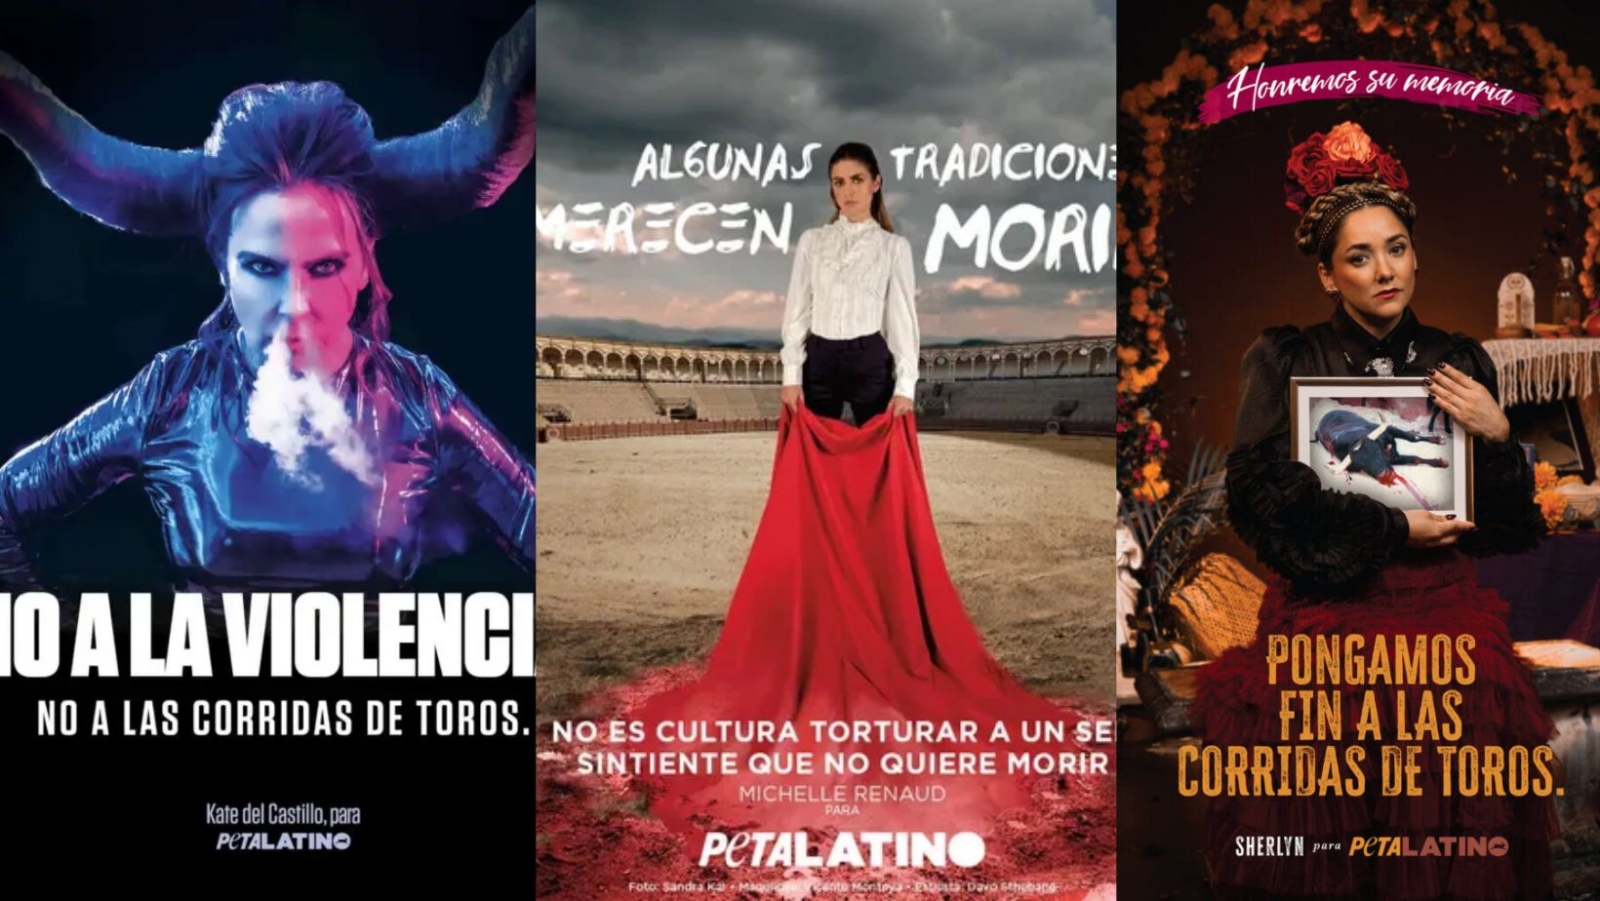 Kate del Castillo, Michelle Renaud, Sherlyn y PETA crean campaña en contra de las corridas de toros